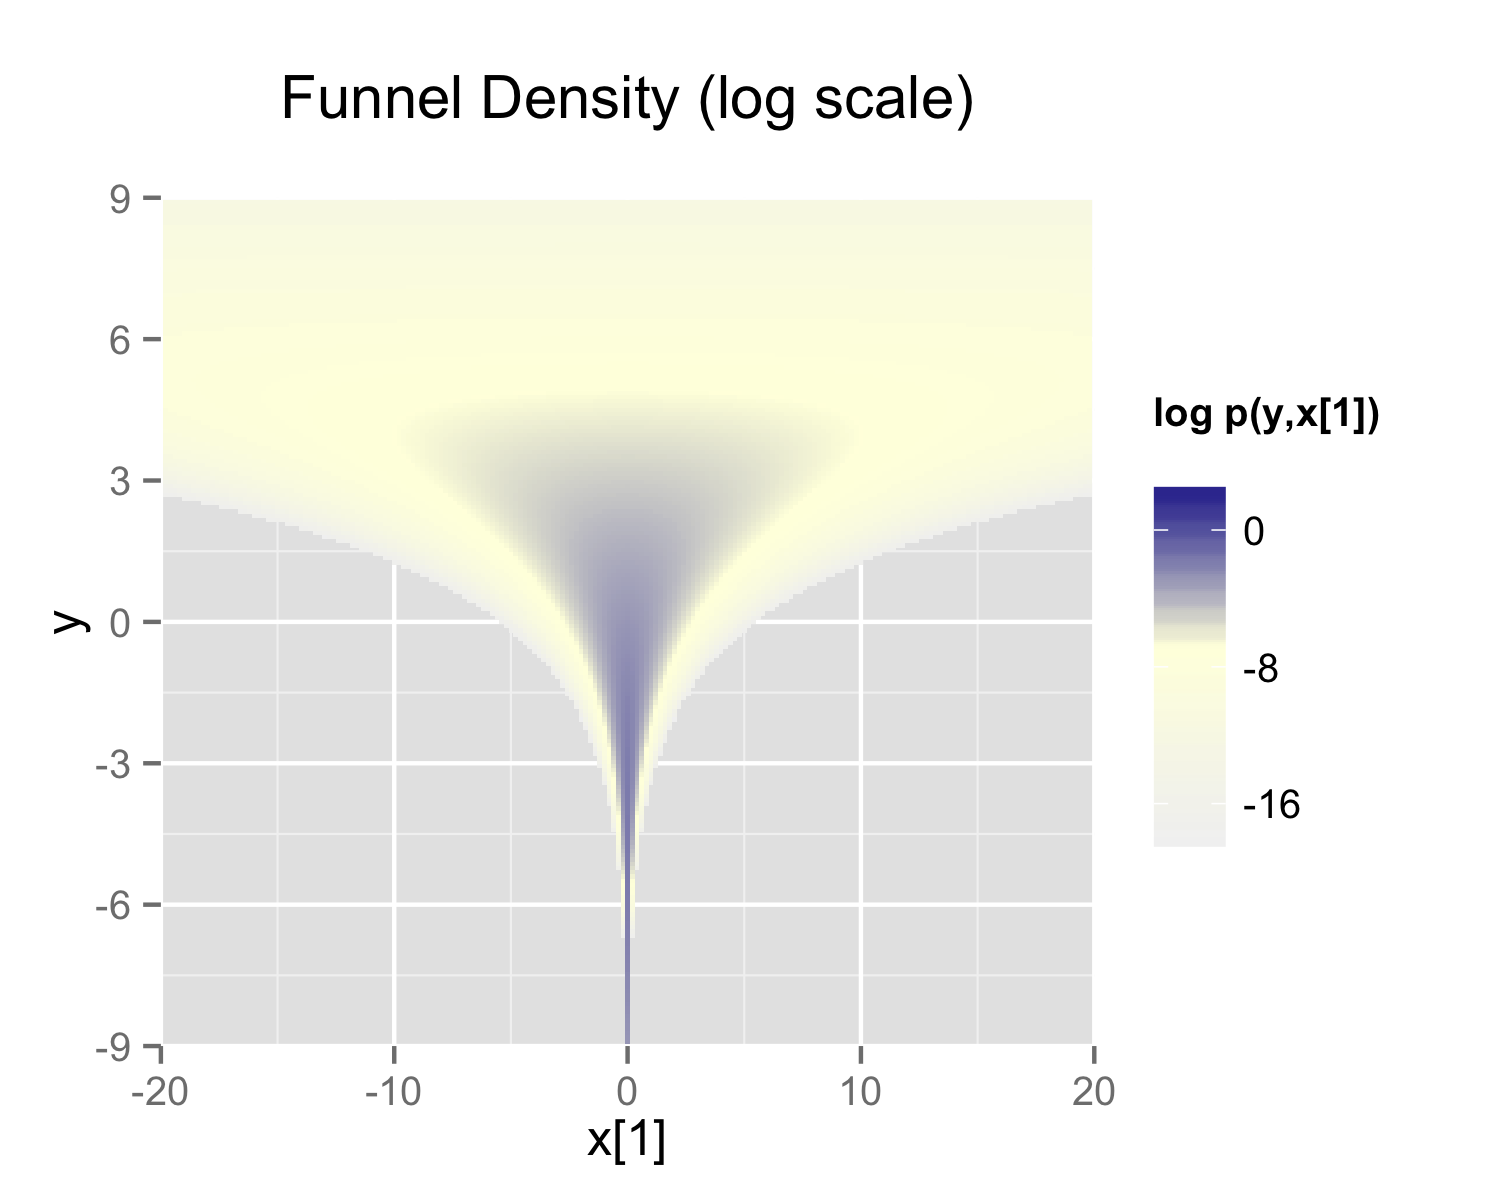 Neal’s funnel density